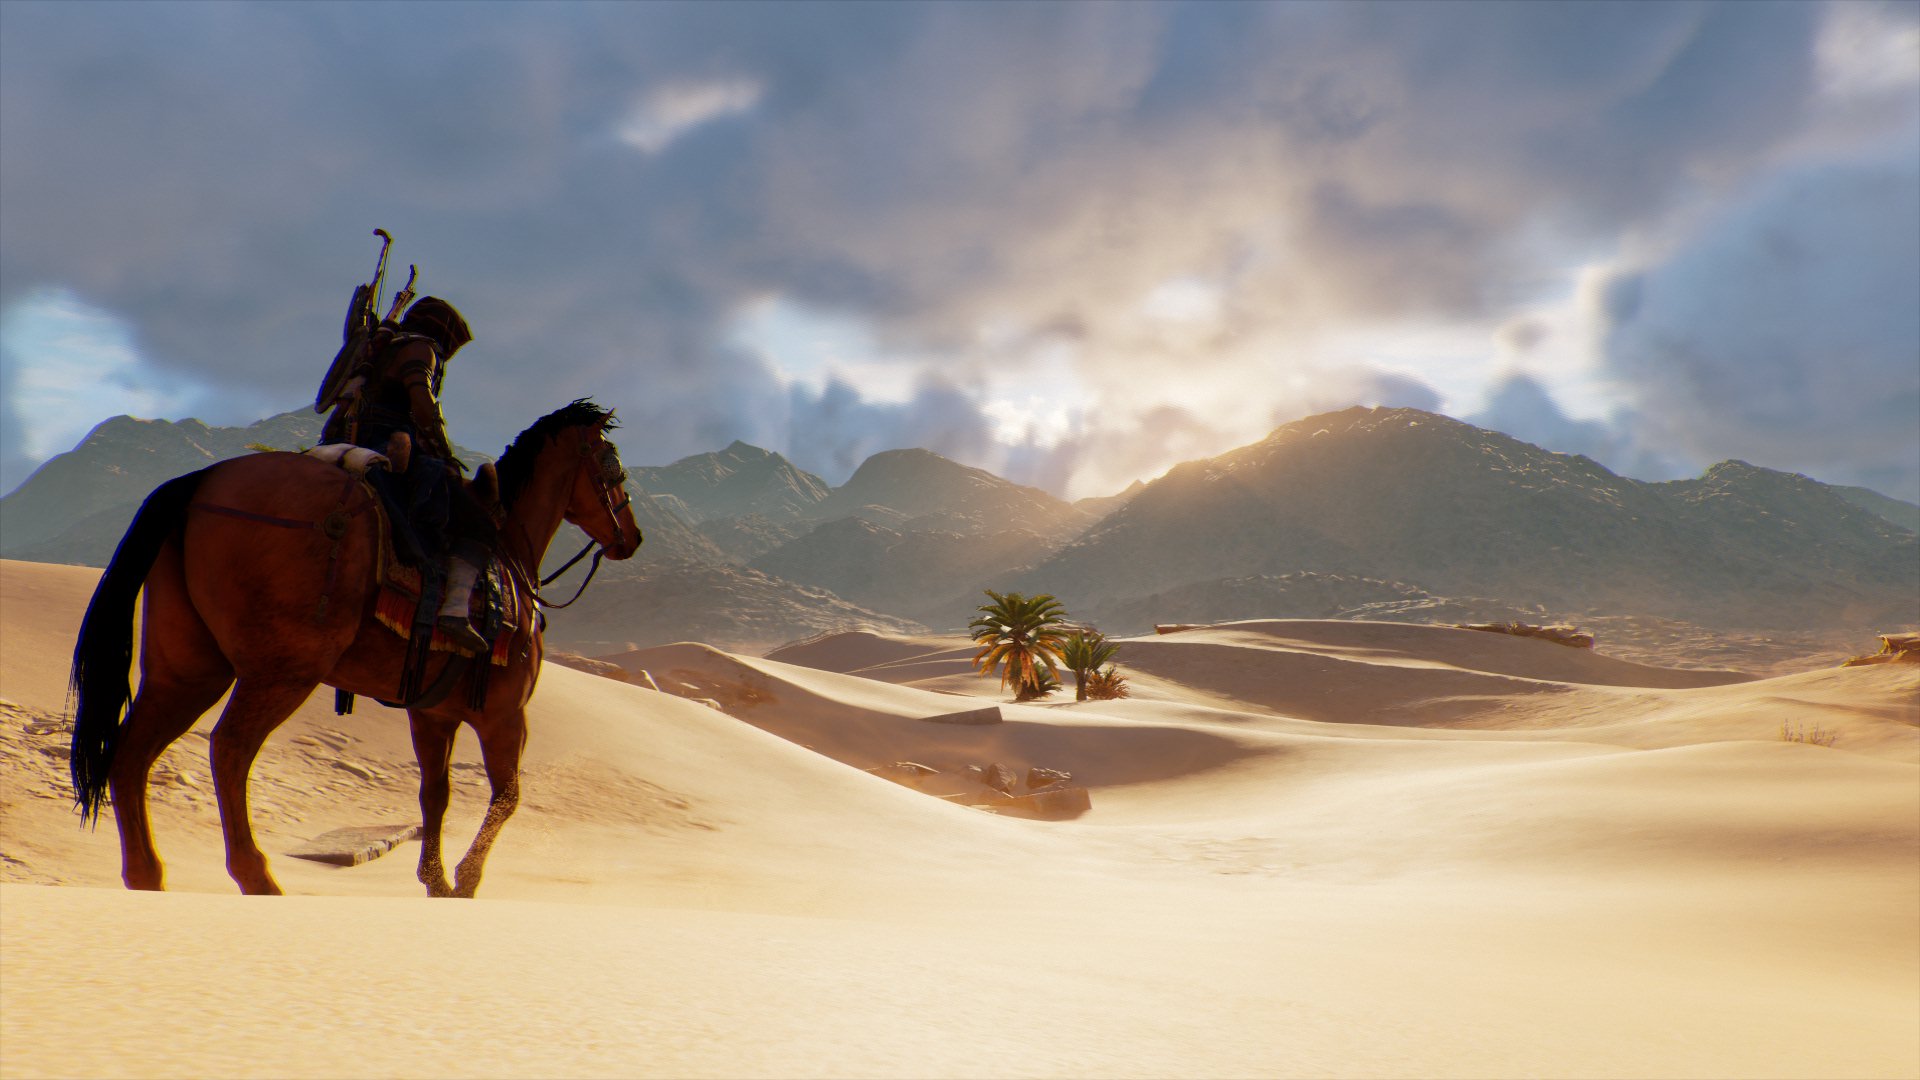 Assassins Creed, Bayek, Ubisoft, Egypt, Desert, Video games, Assassins Creed: Origins, Horse, Sand Wallpaper